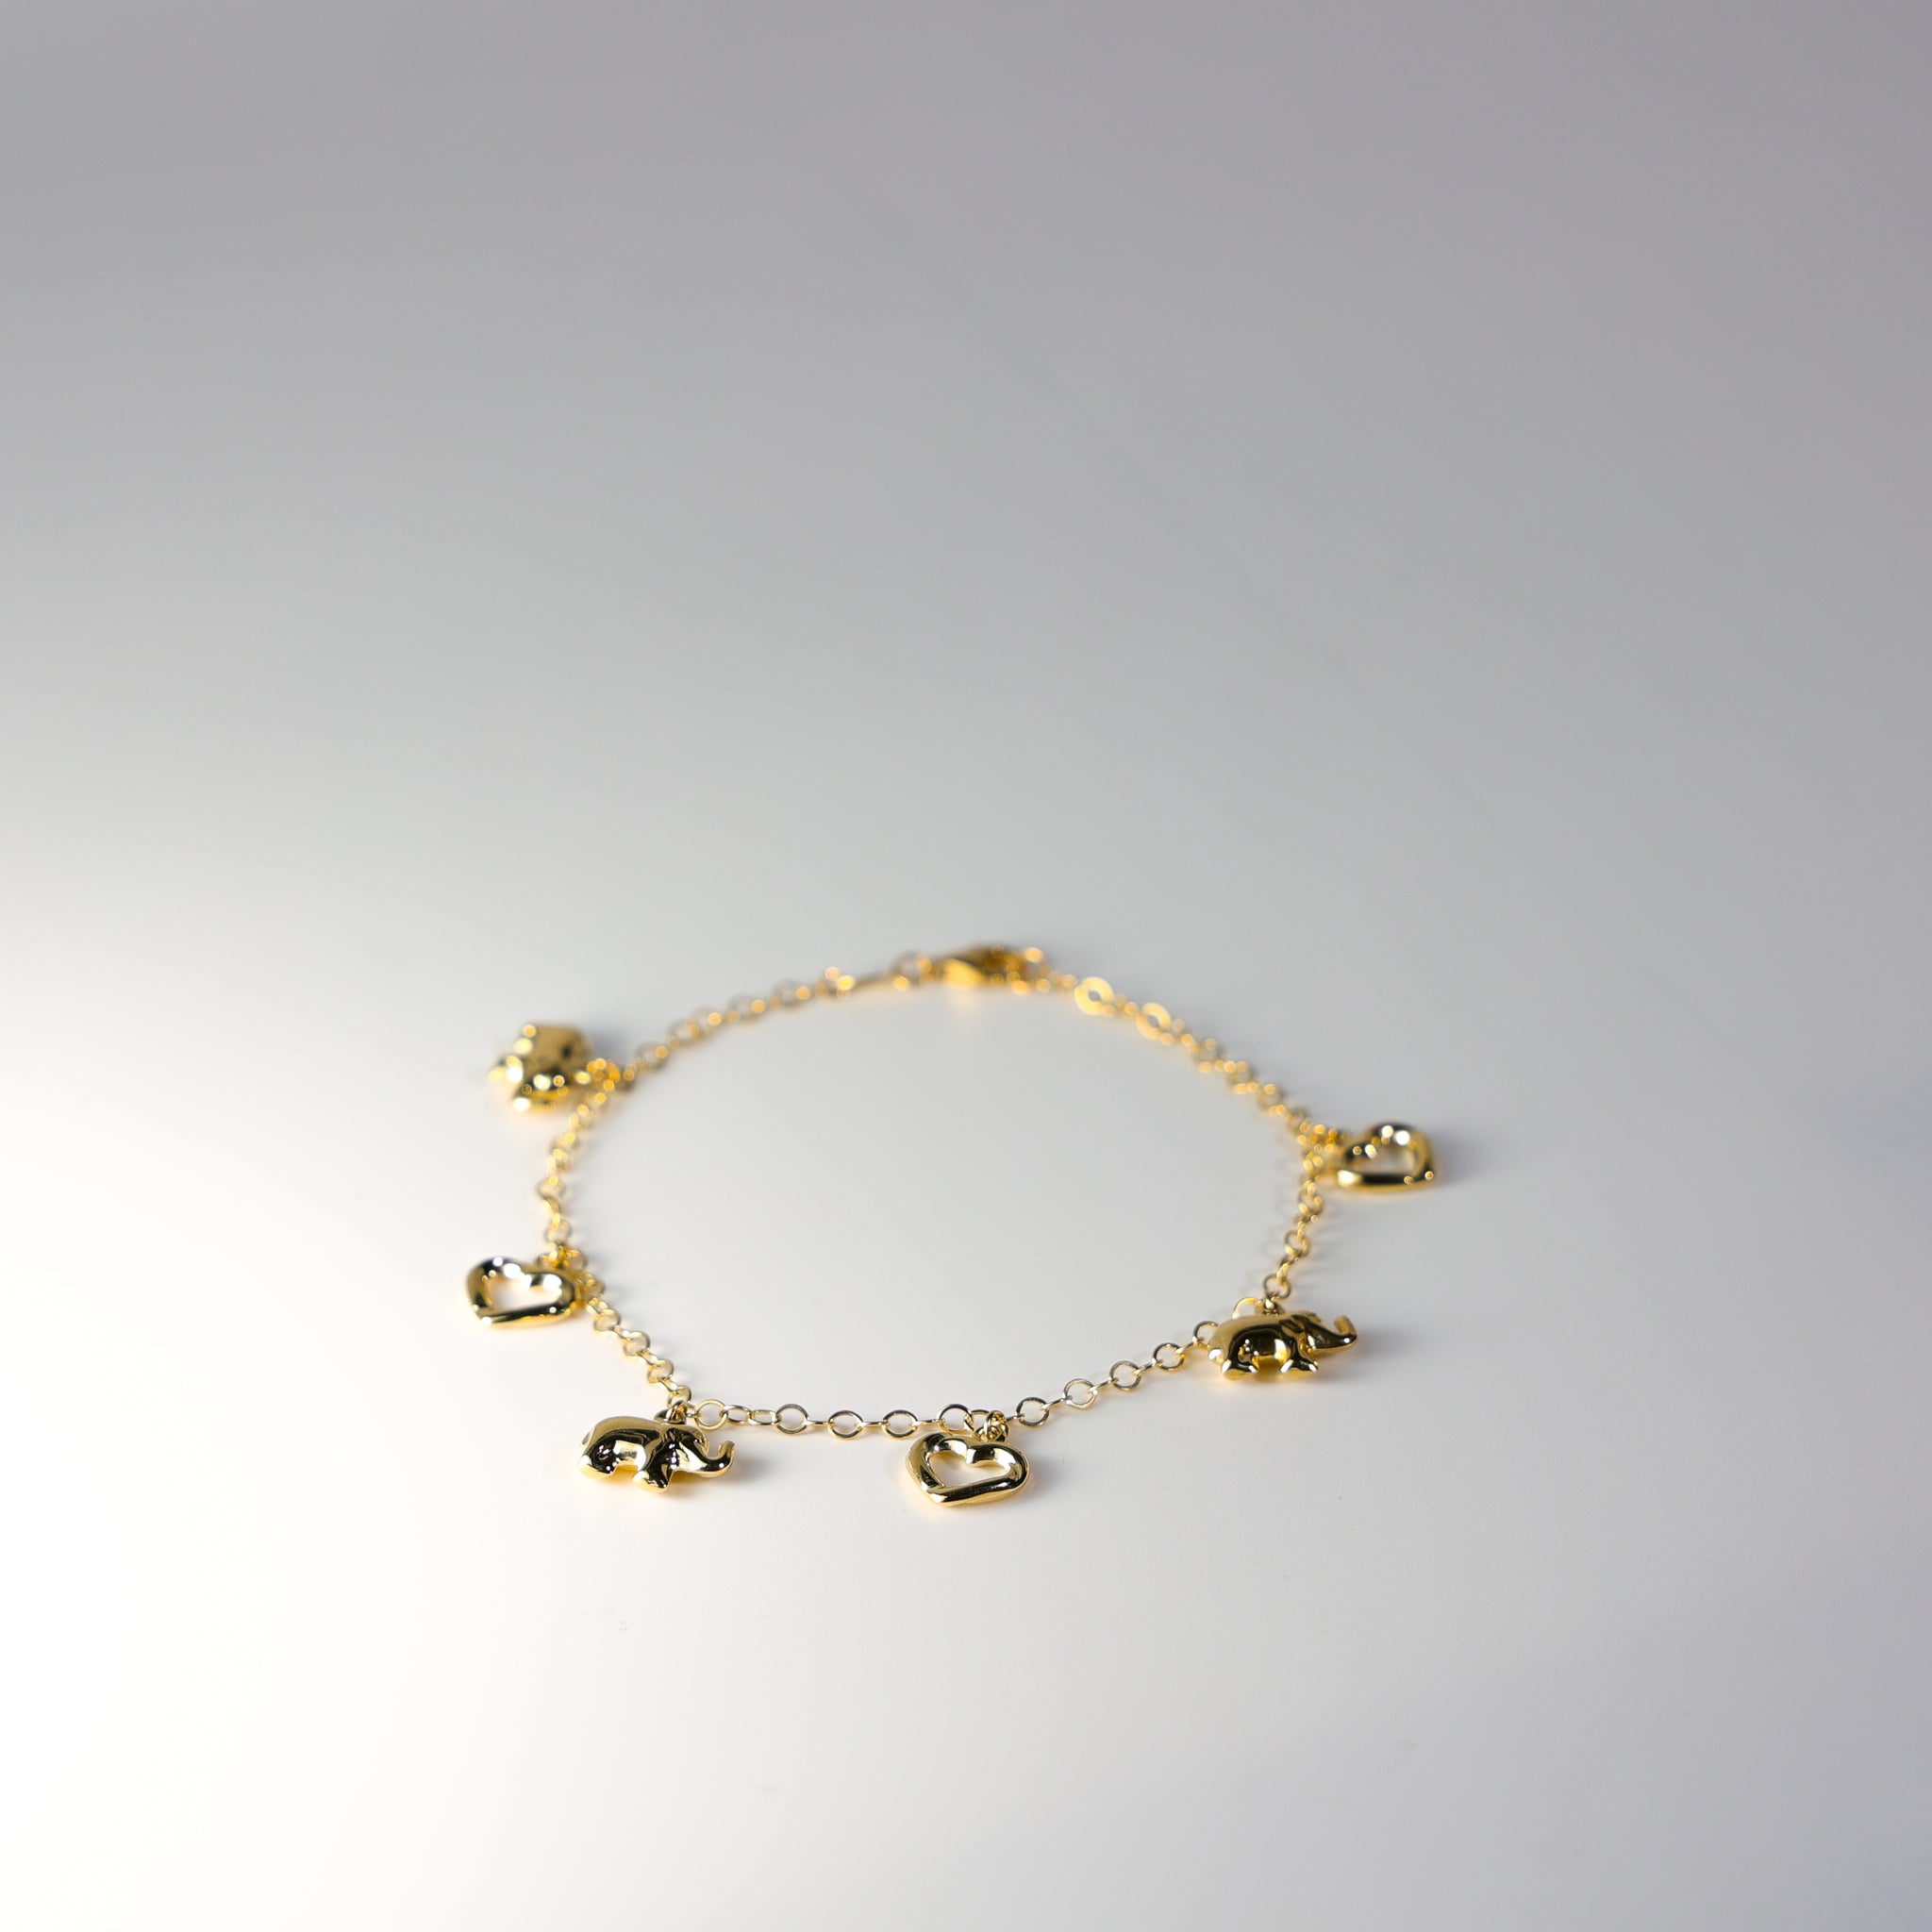 Bracelet of 14K gold - elephant with glittery zircons, fine glossy chain |  Jewelry Eshop